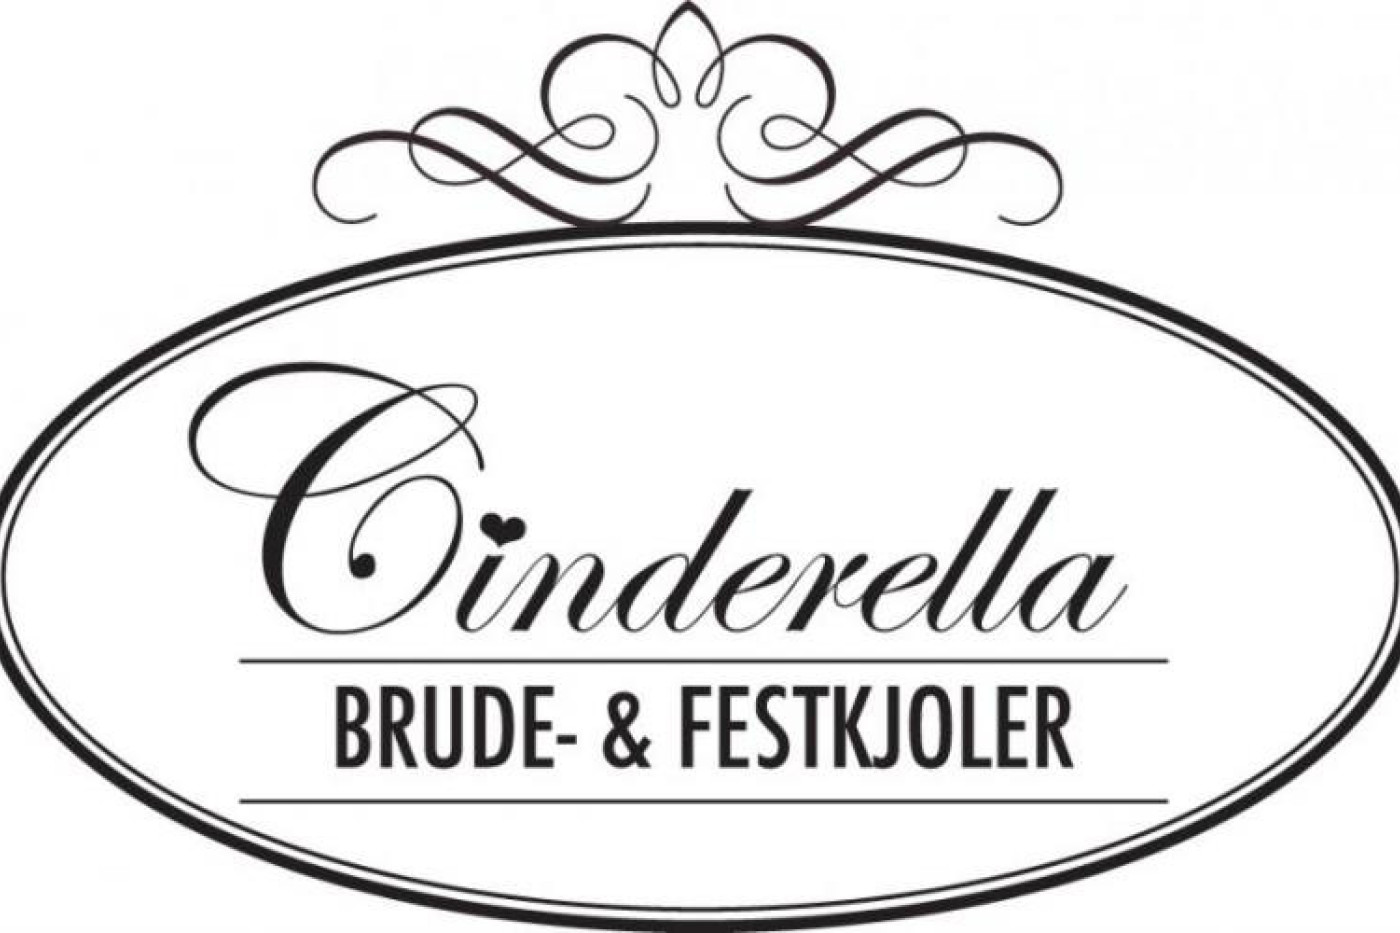 Cinderella lagersalg